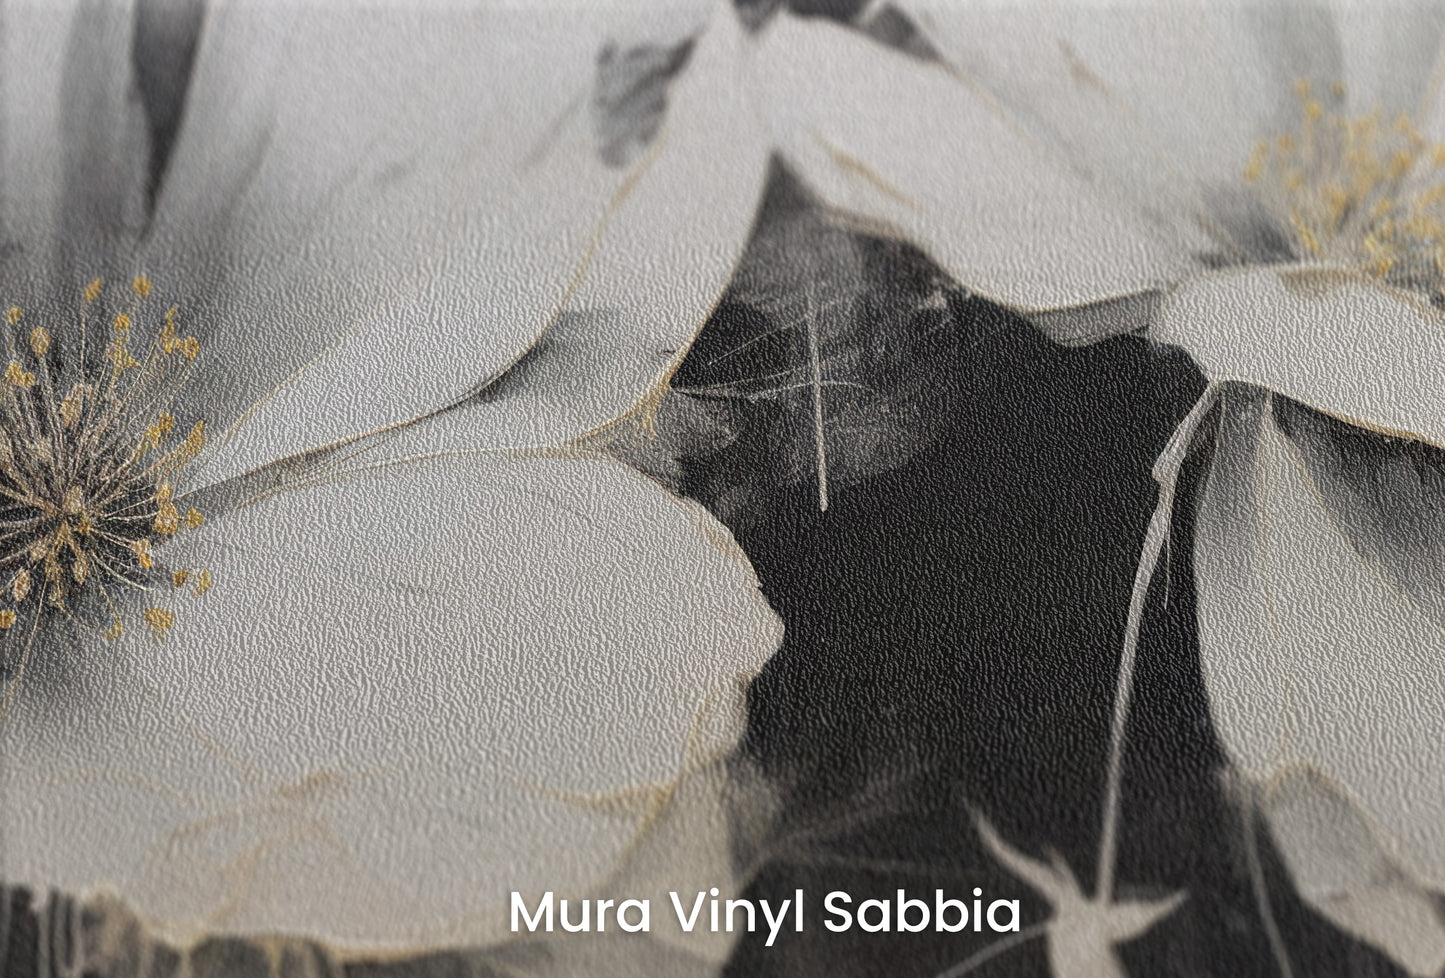 Zbliżenie na artystyczną fototapetę o nazwie MIDNIGHT GARDEN na podłożu Mura Vinyl Sabbia struktura grubego ziarna piasku.